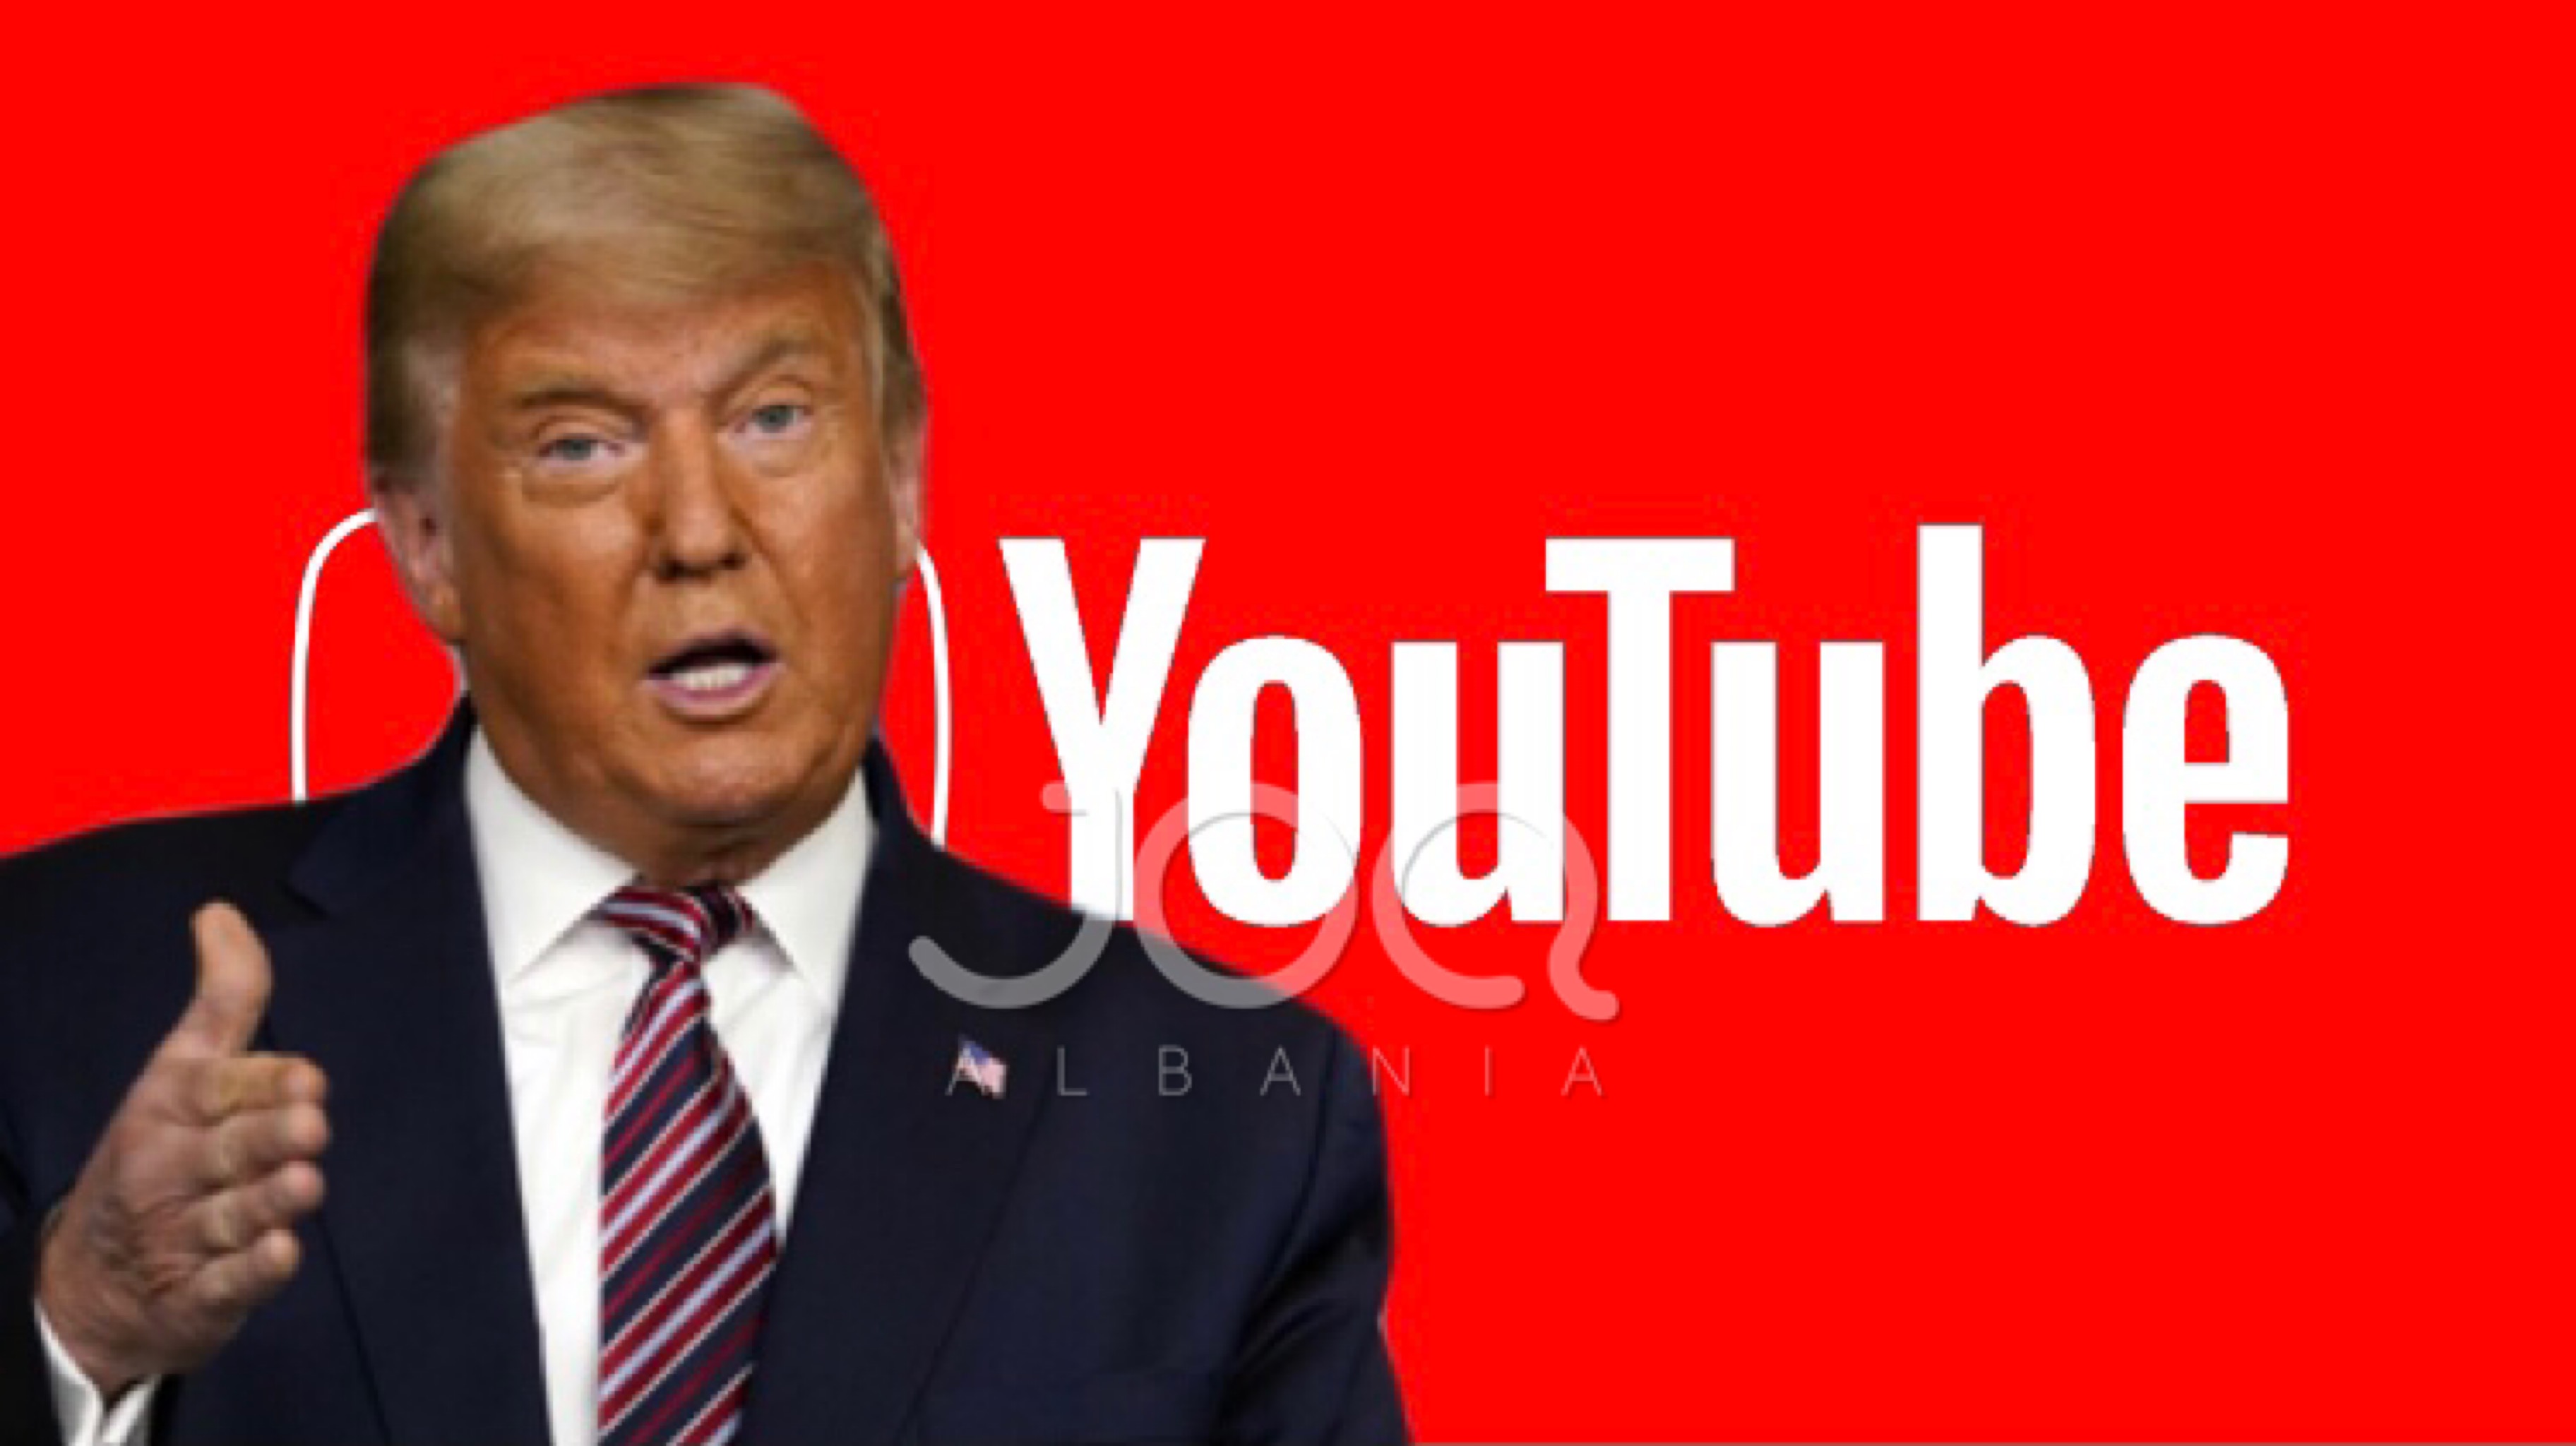 YouTube pezullon kanalin e Trump, shkel politikën për nxitjen e dhunës